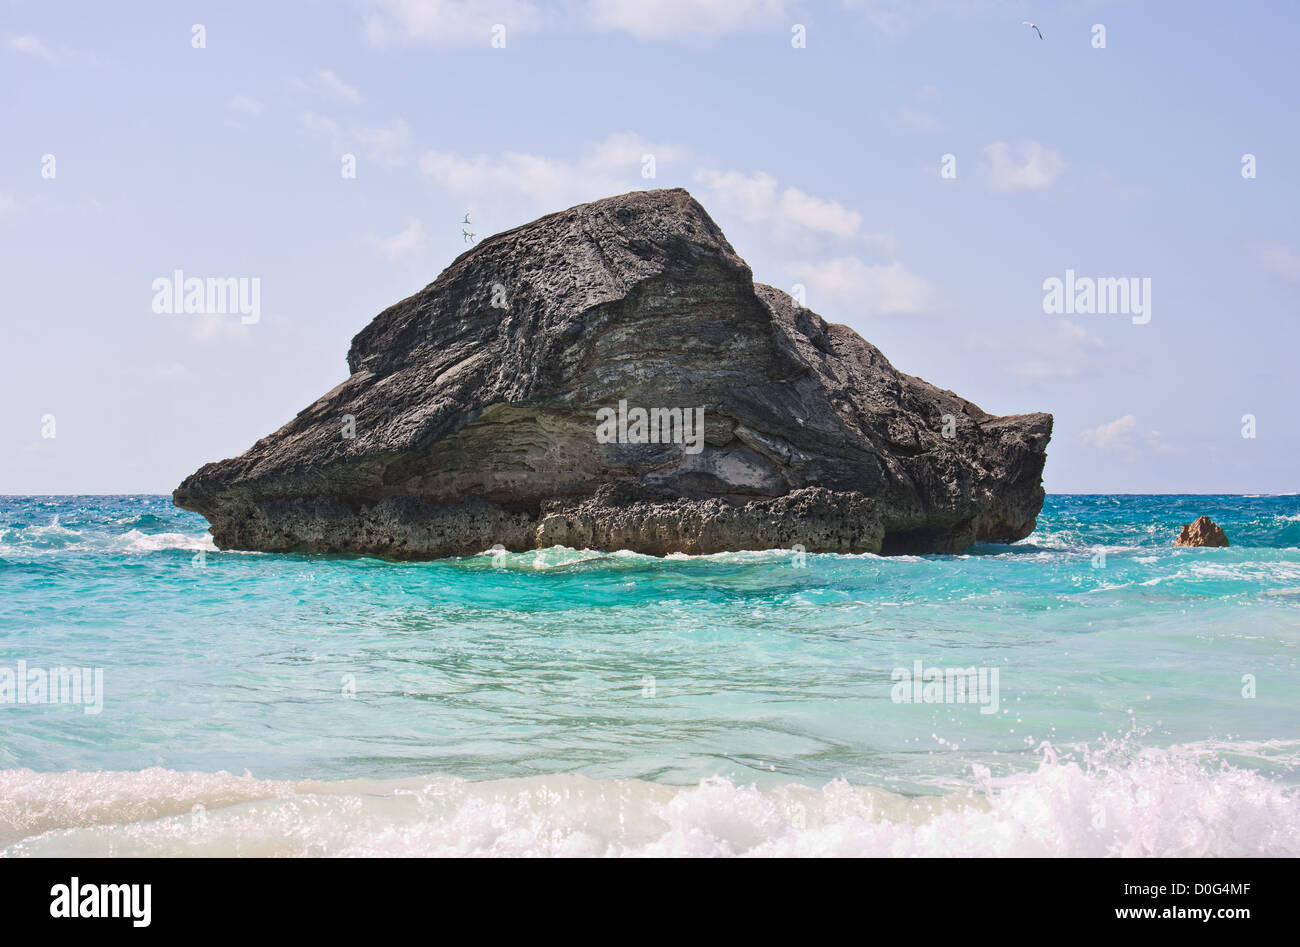 Ein großer Felsen im Atlantik in den Küstengewässern von Bermuda. Foto wurde am Horseshoe Bay in Bermuda. Stockfoto